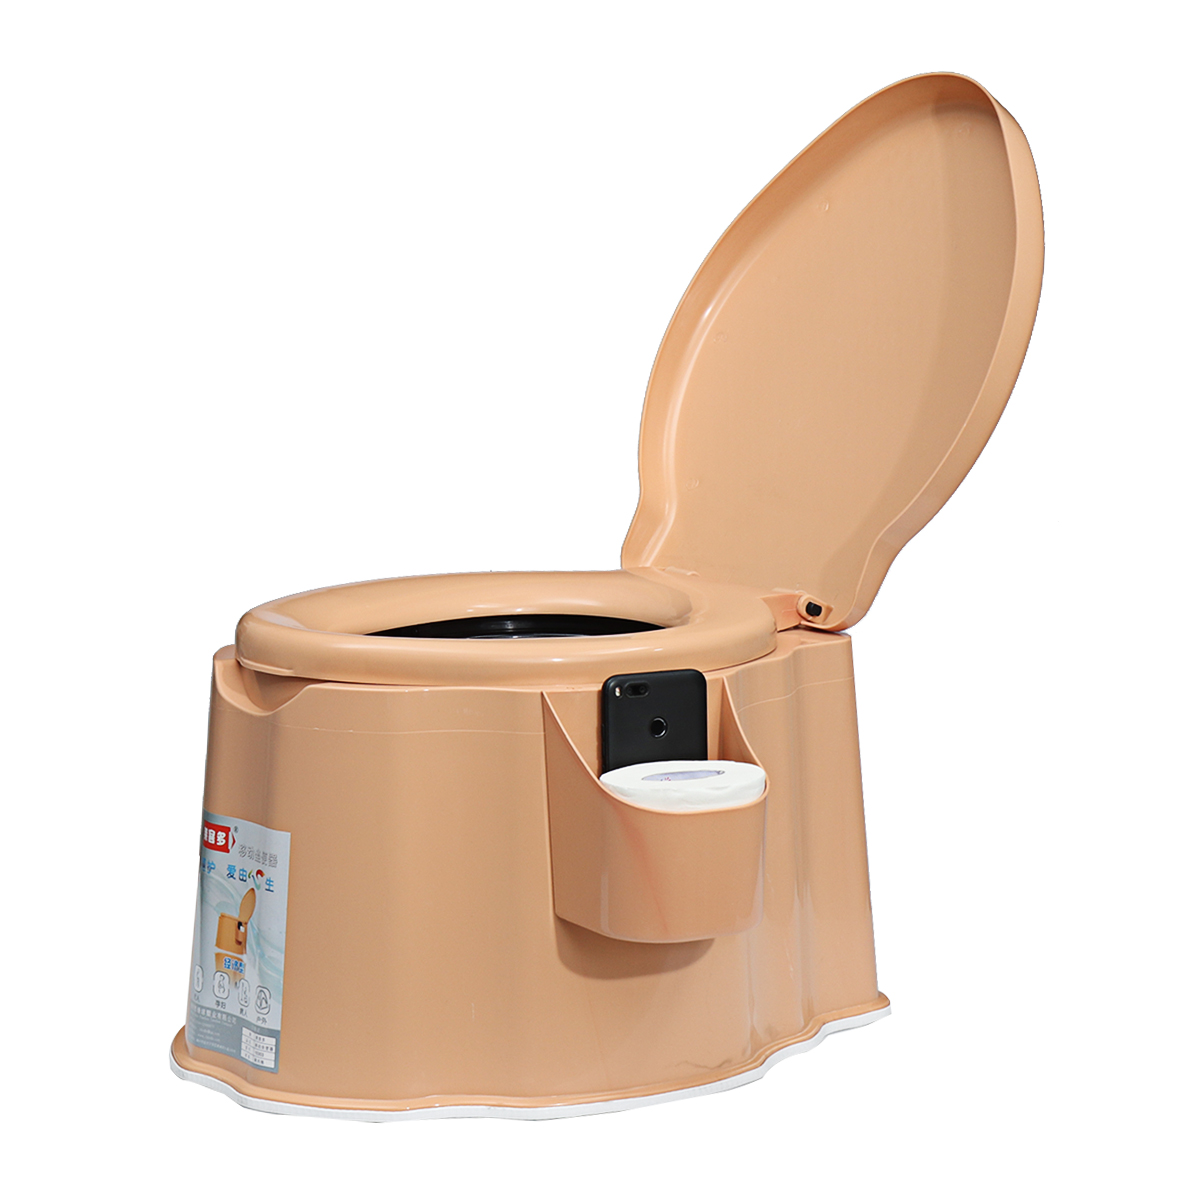 Khaki-Detachable-Toilet-Portable-Toilet-for-Elderly-1567257-2